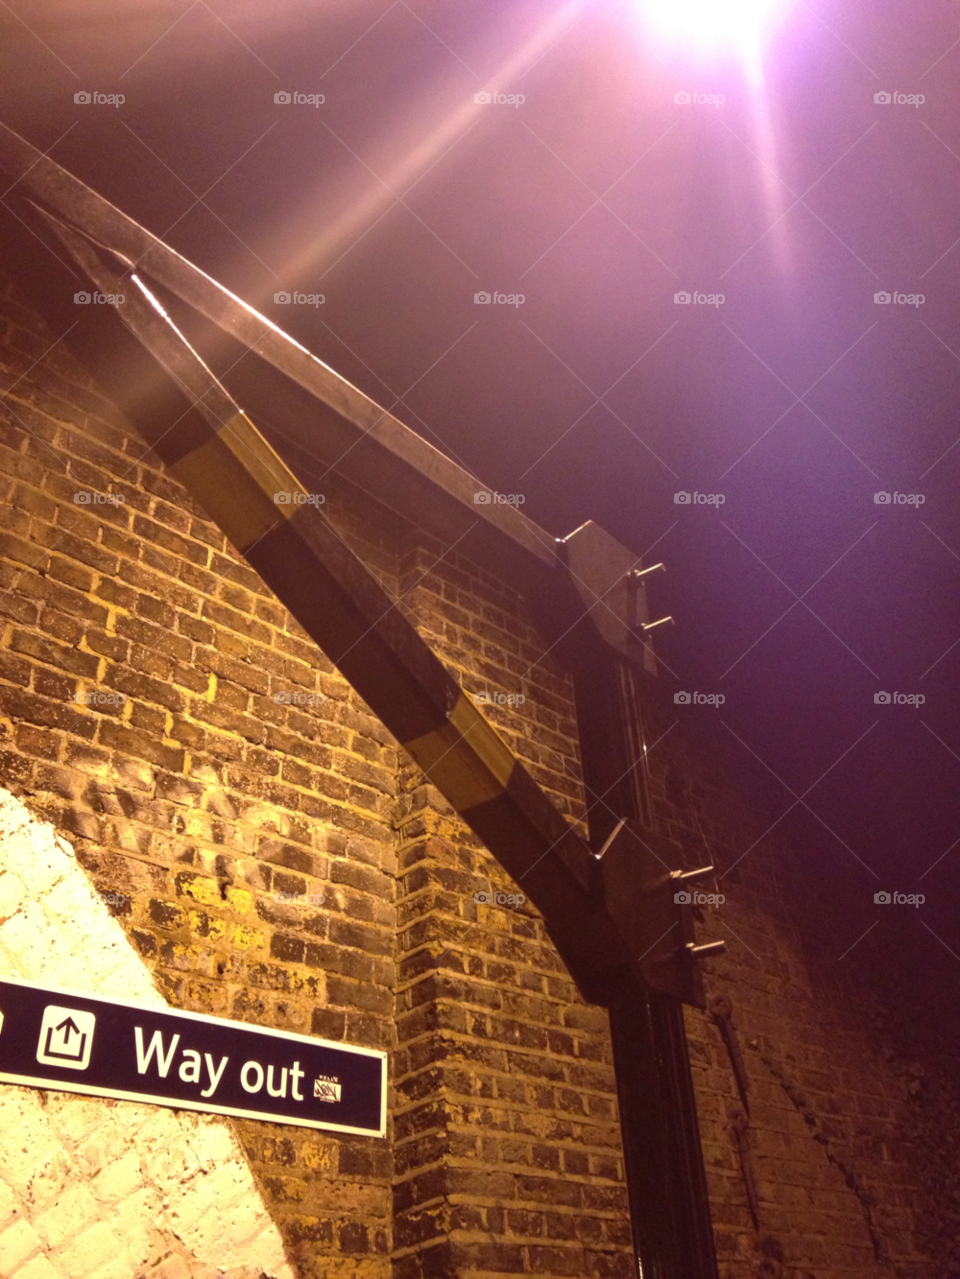 brentford station night bridge brick wall by capturedshutter